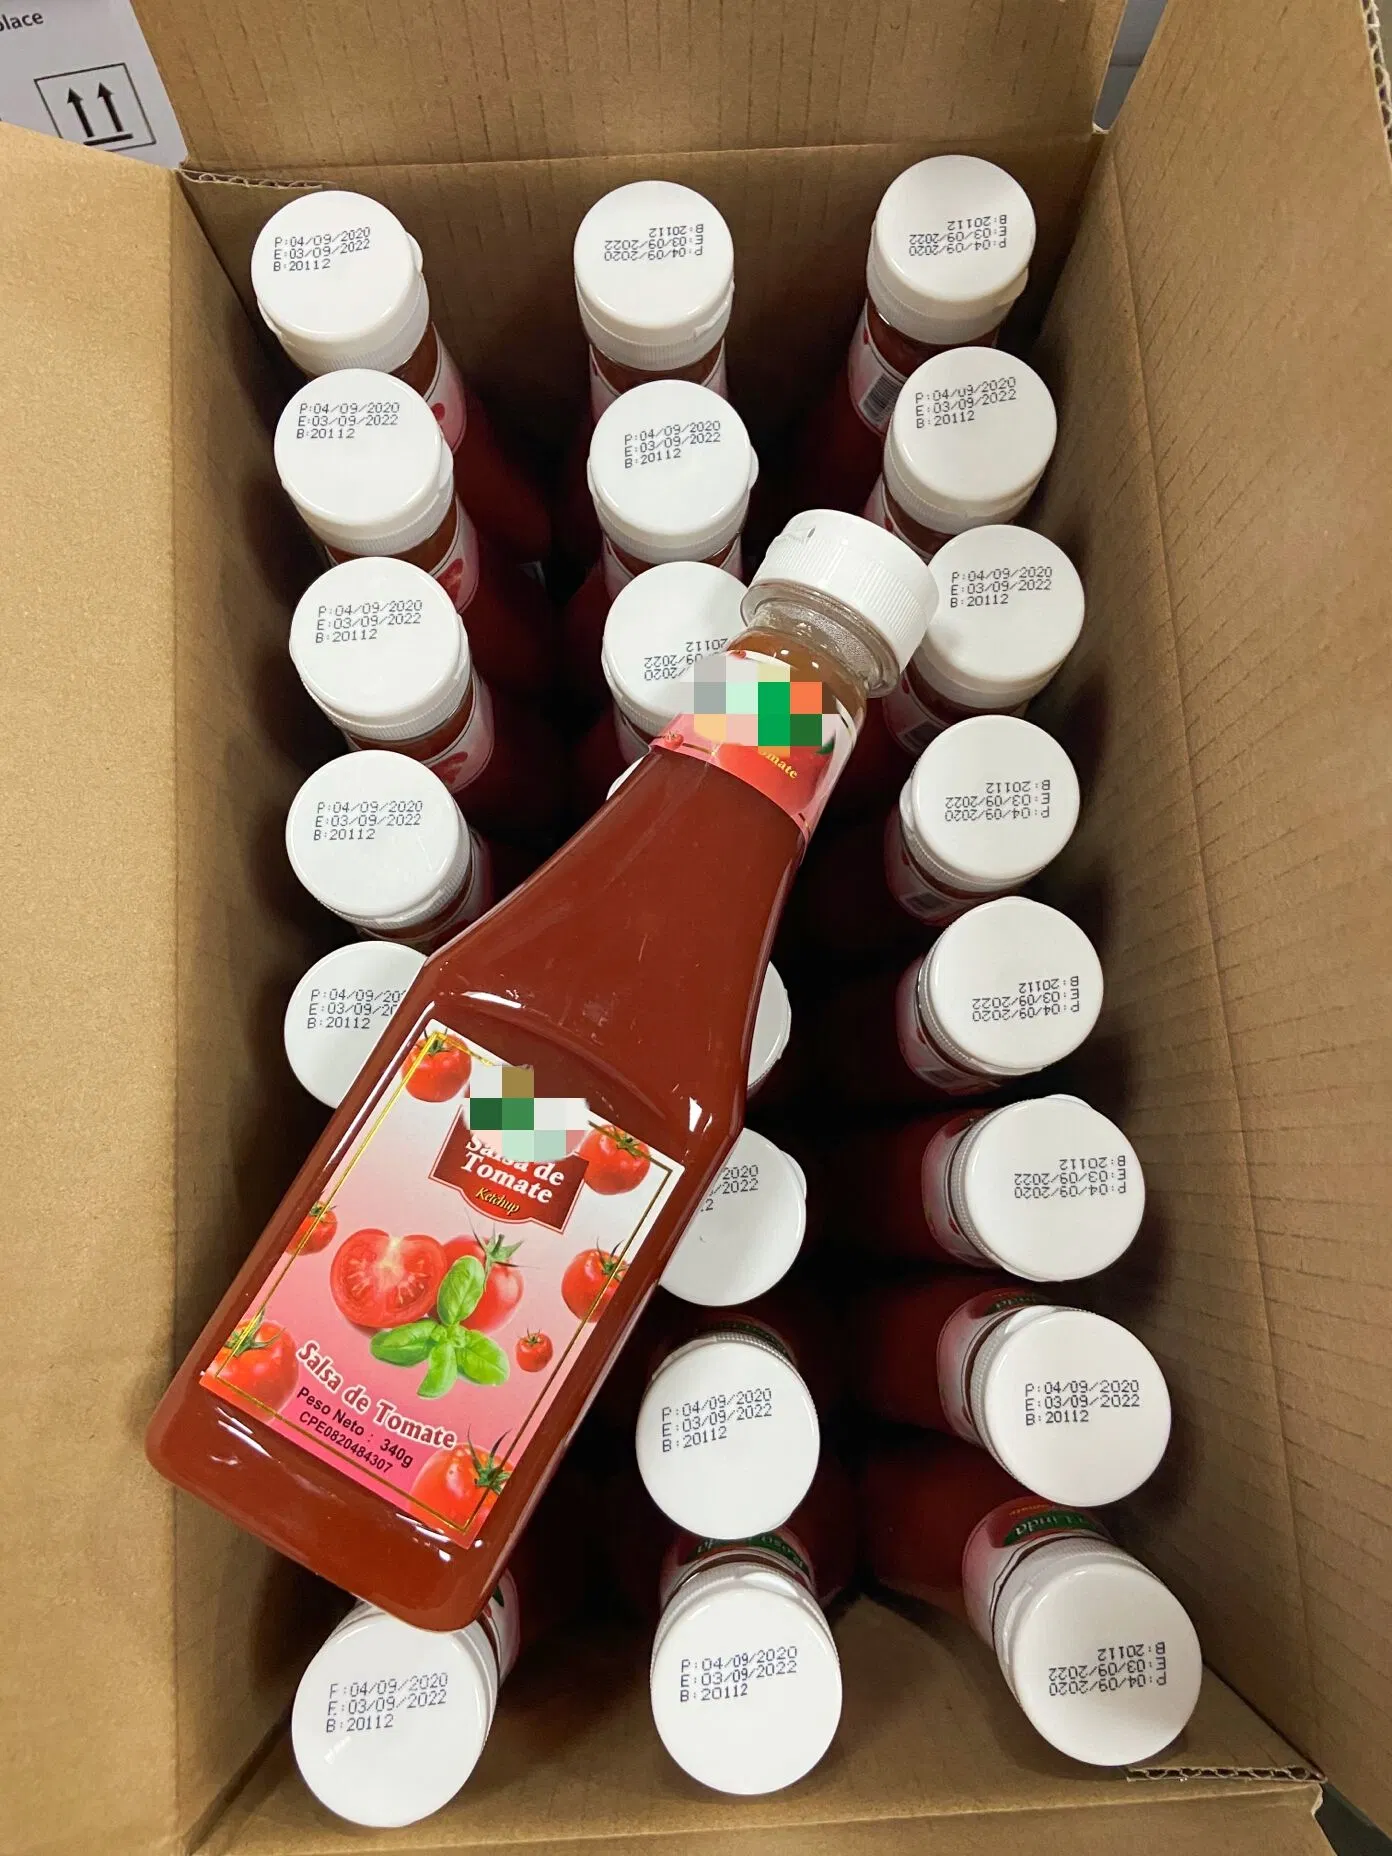 Vente en gros ketchup bouteille en plastique Ketchup 340gr spécifications sauce tomate 12 Oz